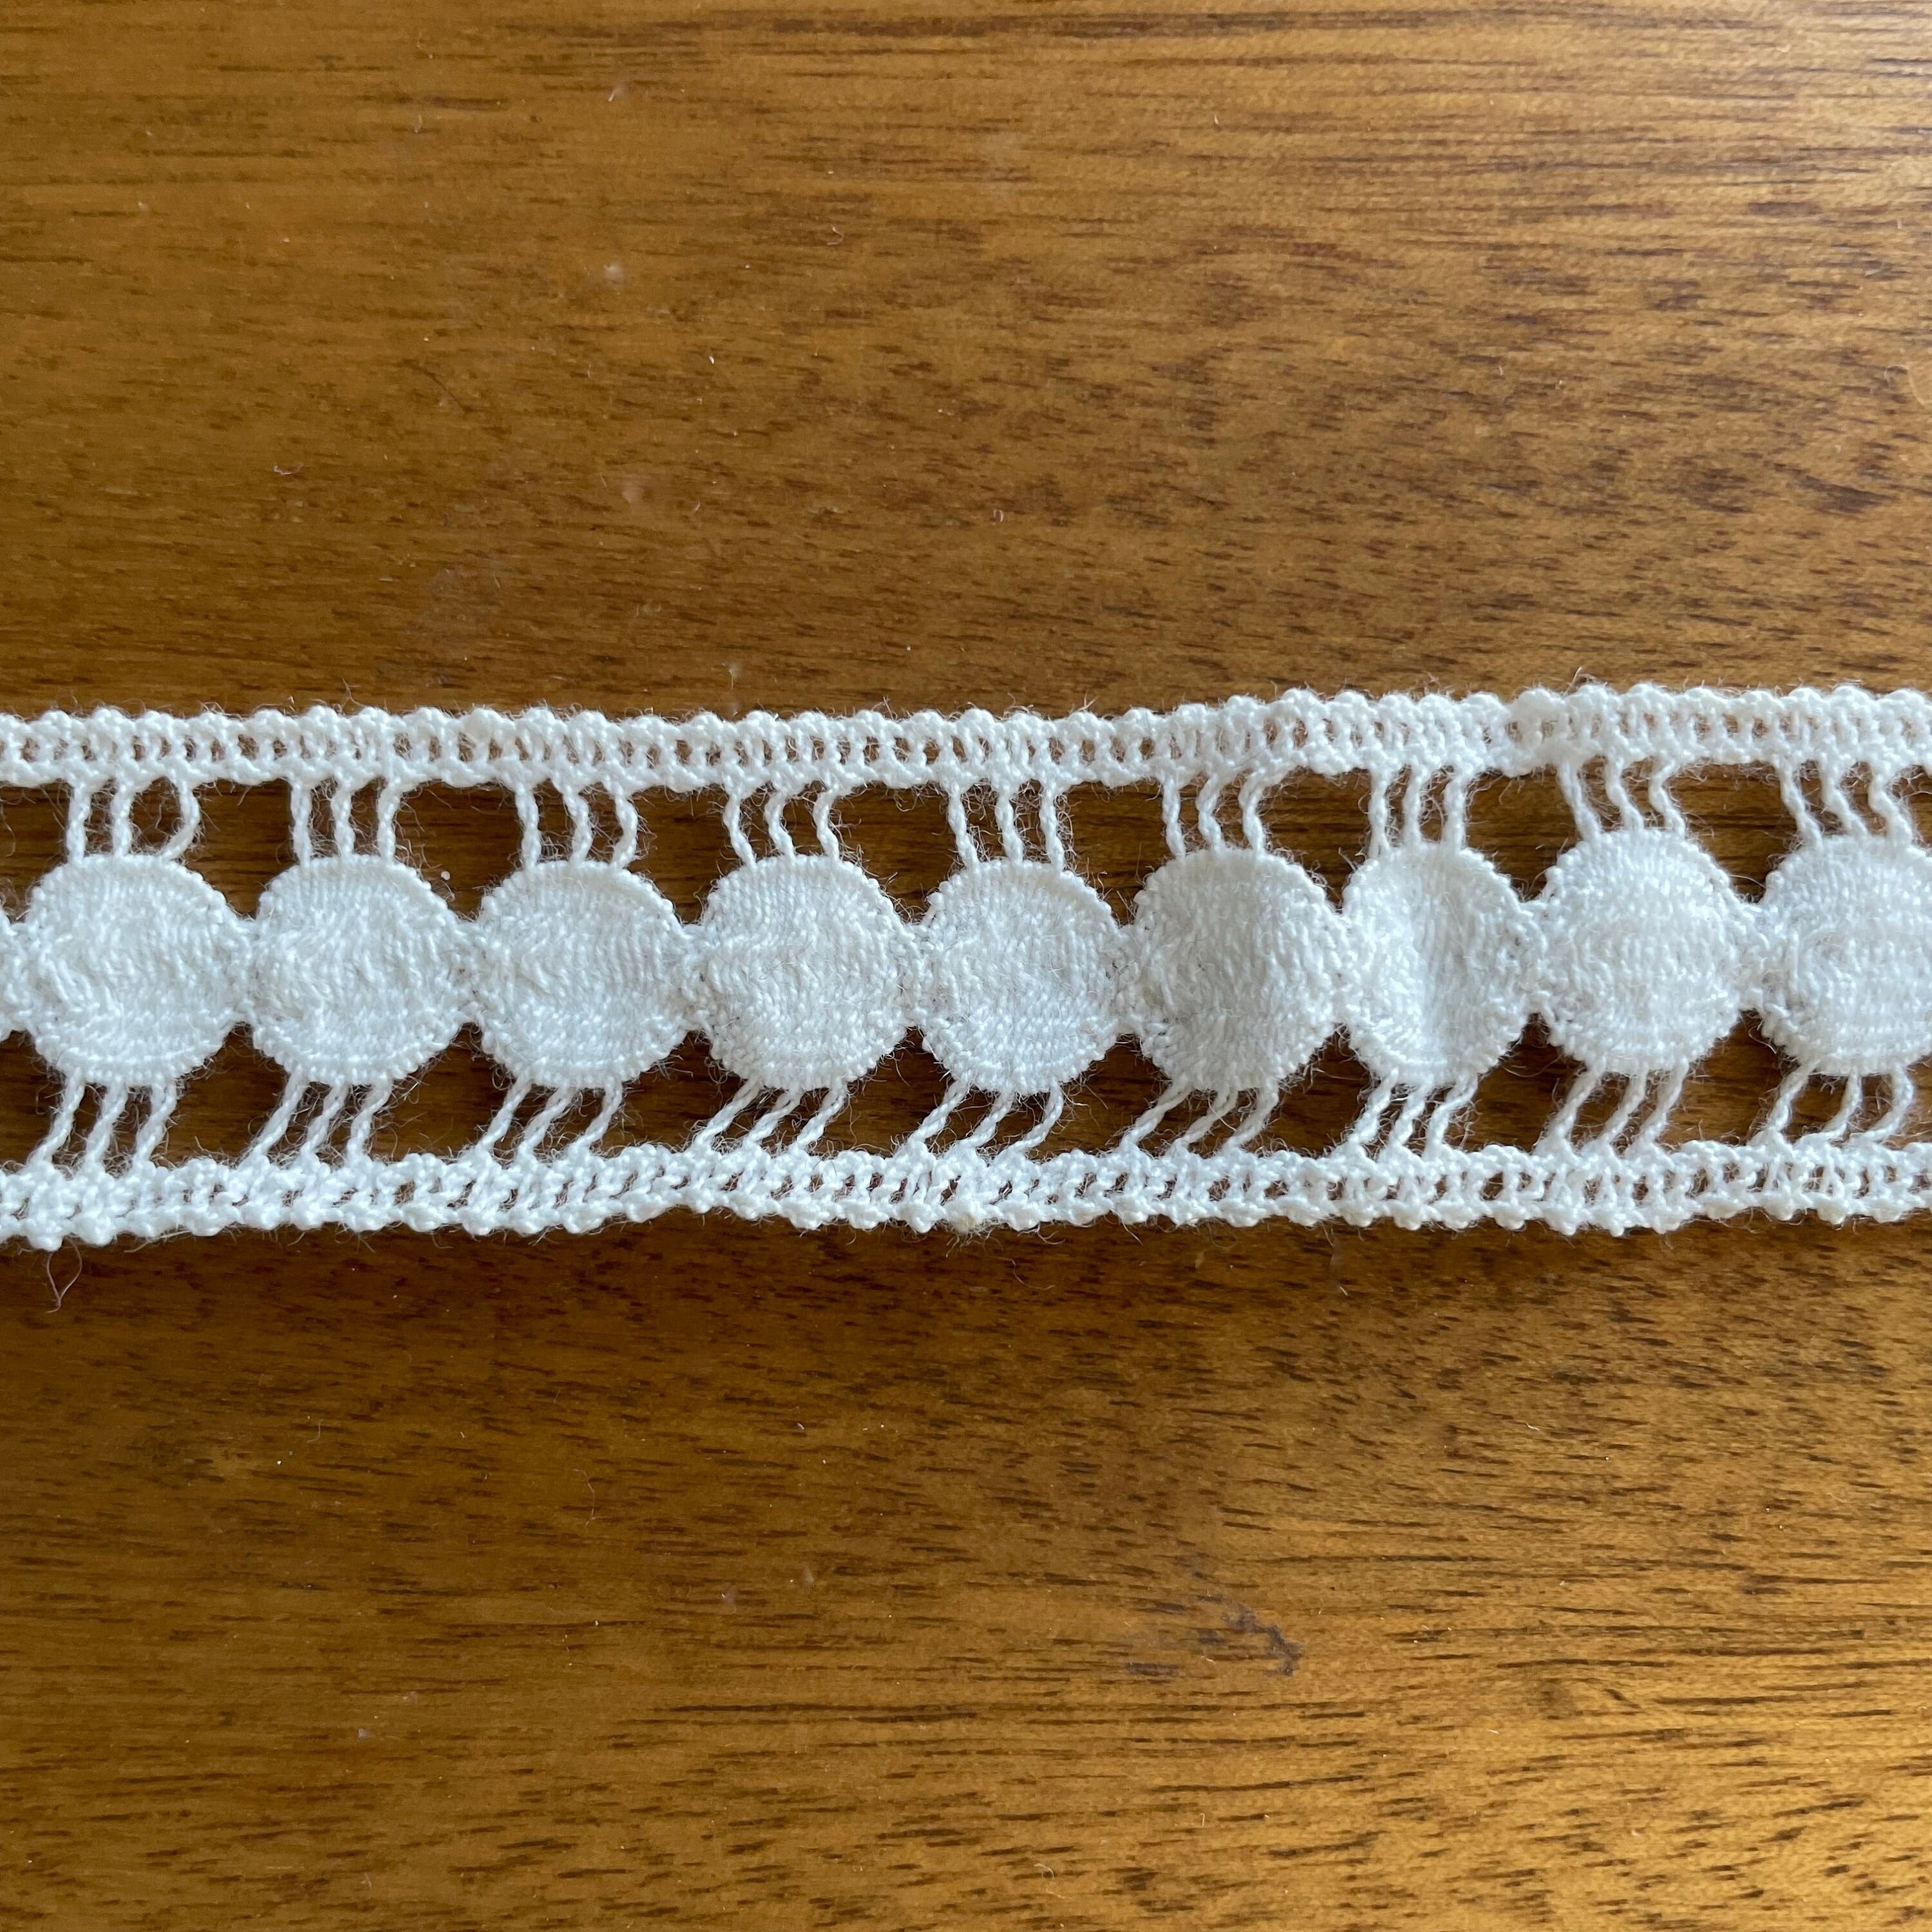 Vintage Antique White Cotton Double Edged Crochet Lace Trim Edging